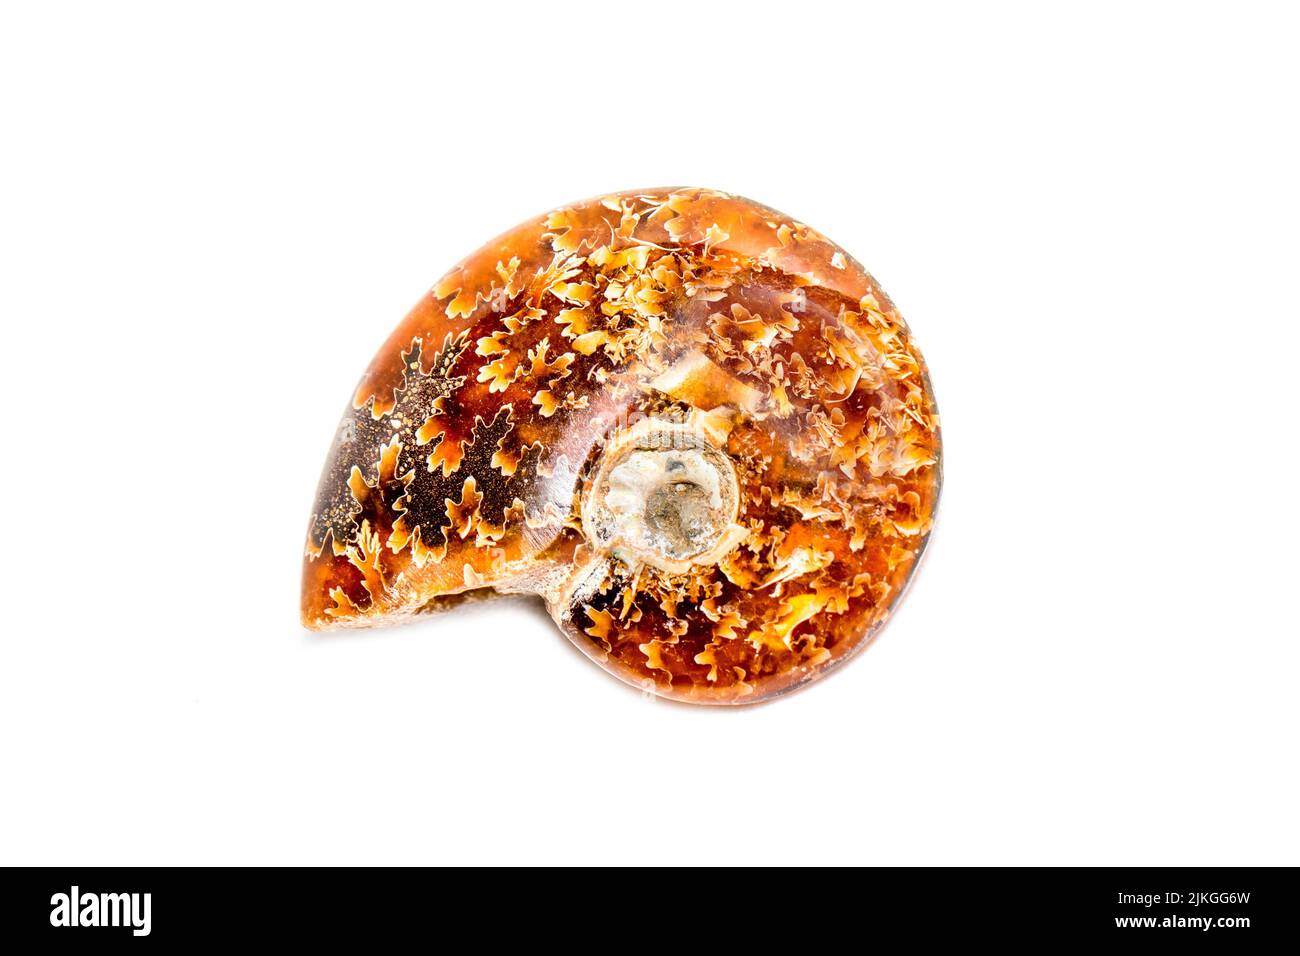 Immagine di un'ammonite arancione su sfondo bianco. Fossile. Conchiglie marine. Foto Stock